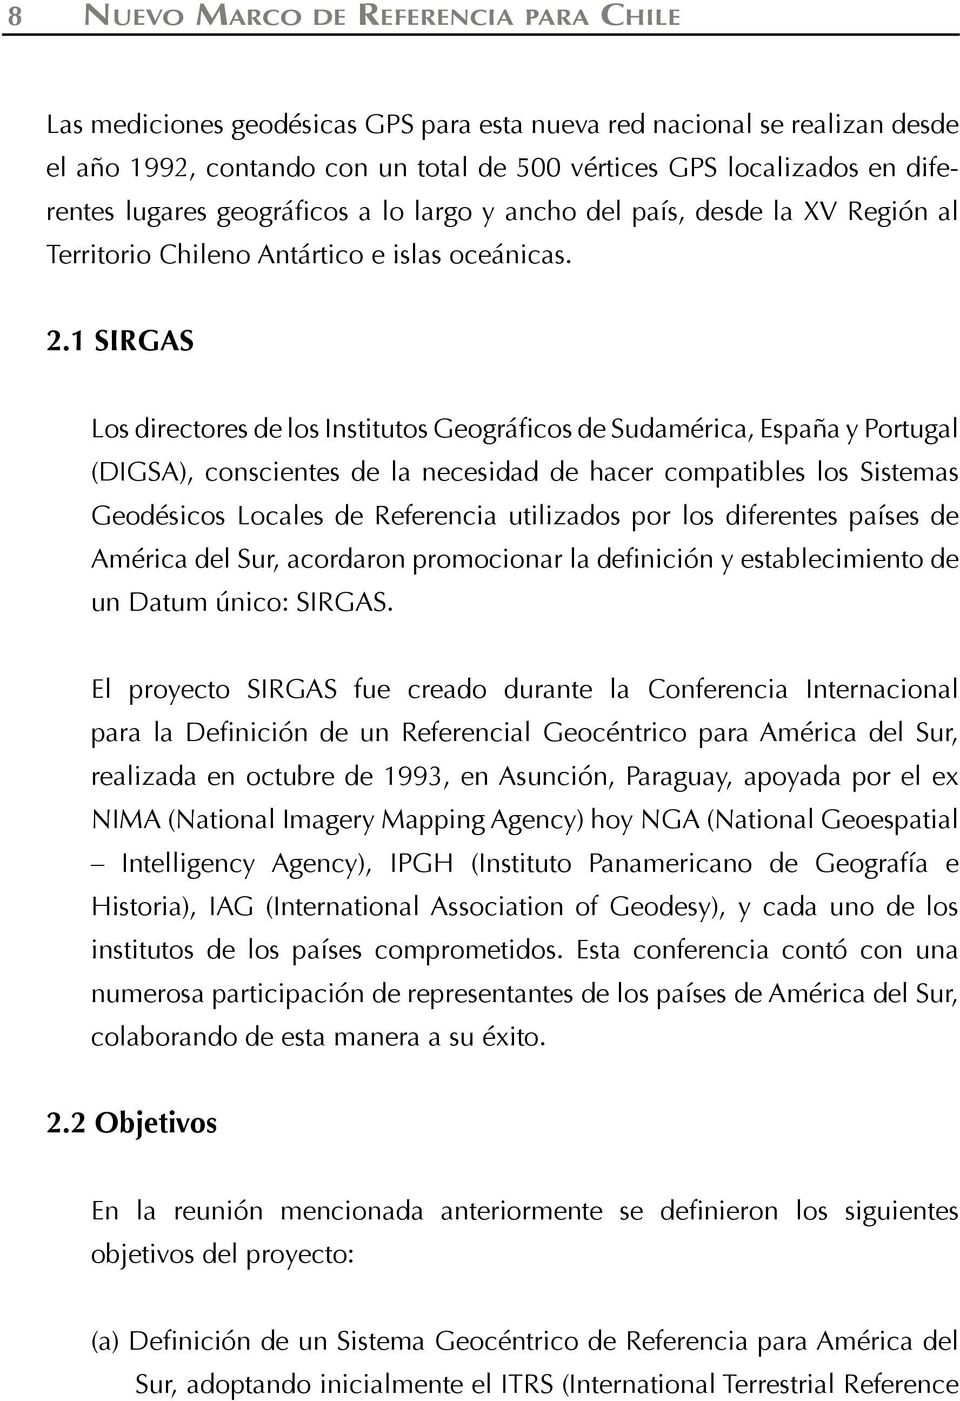 1 SIRGAS Los directores de los Institutos Geográficos de Sudamérica, España y Portugal (DIGSA), conscientes de la necesidad de hacer compatibles los Sistemas Geodésicos Locales de Referencia